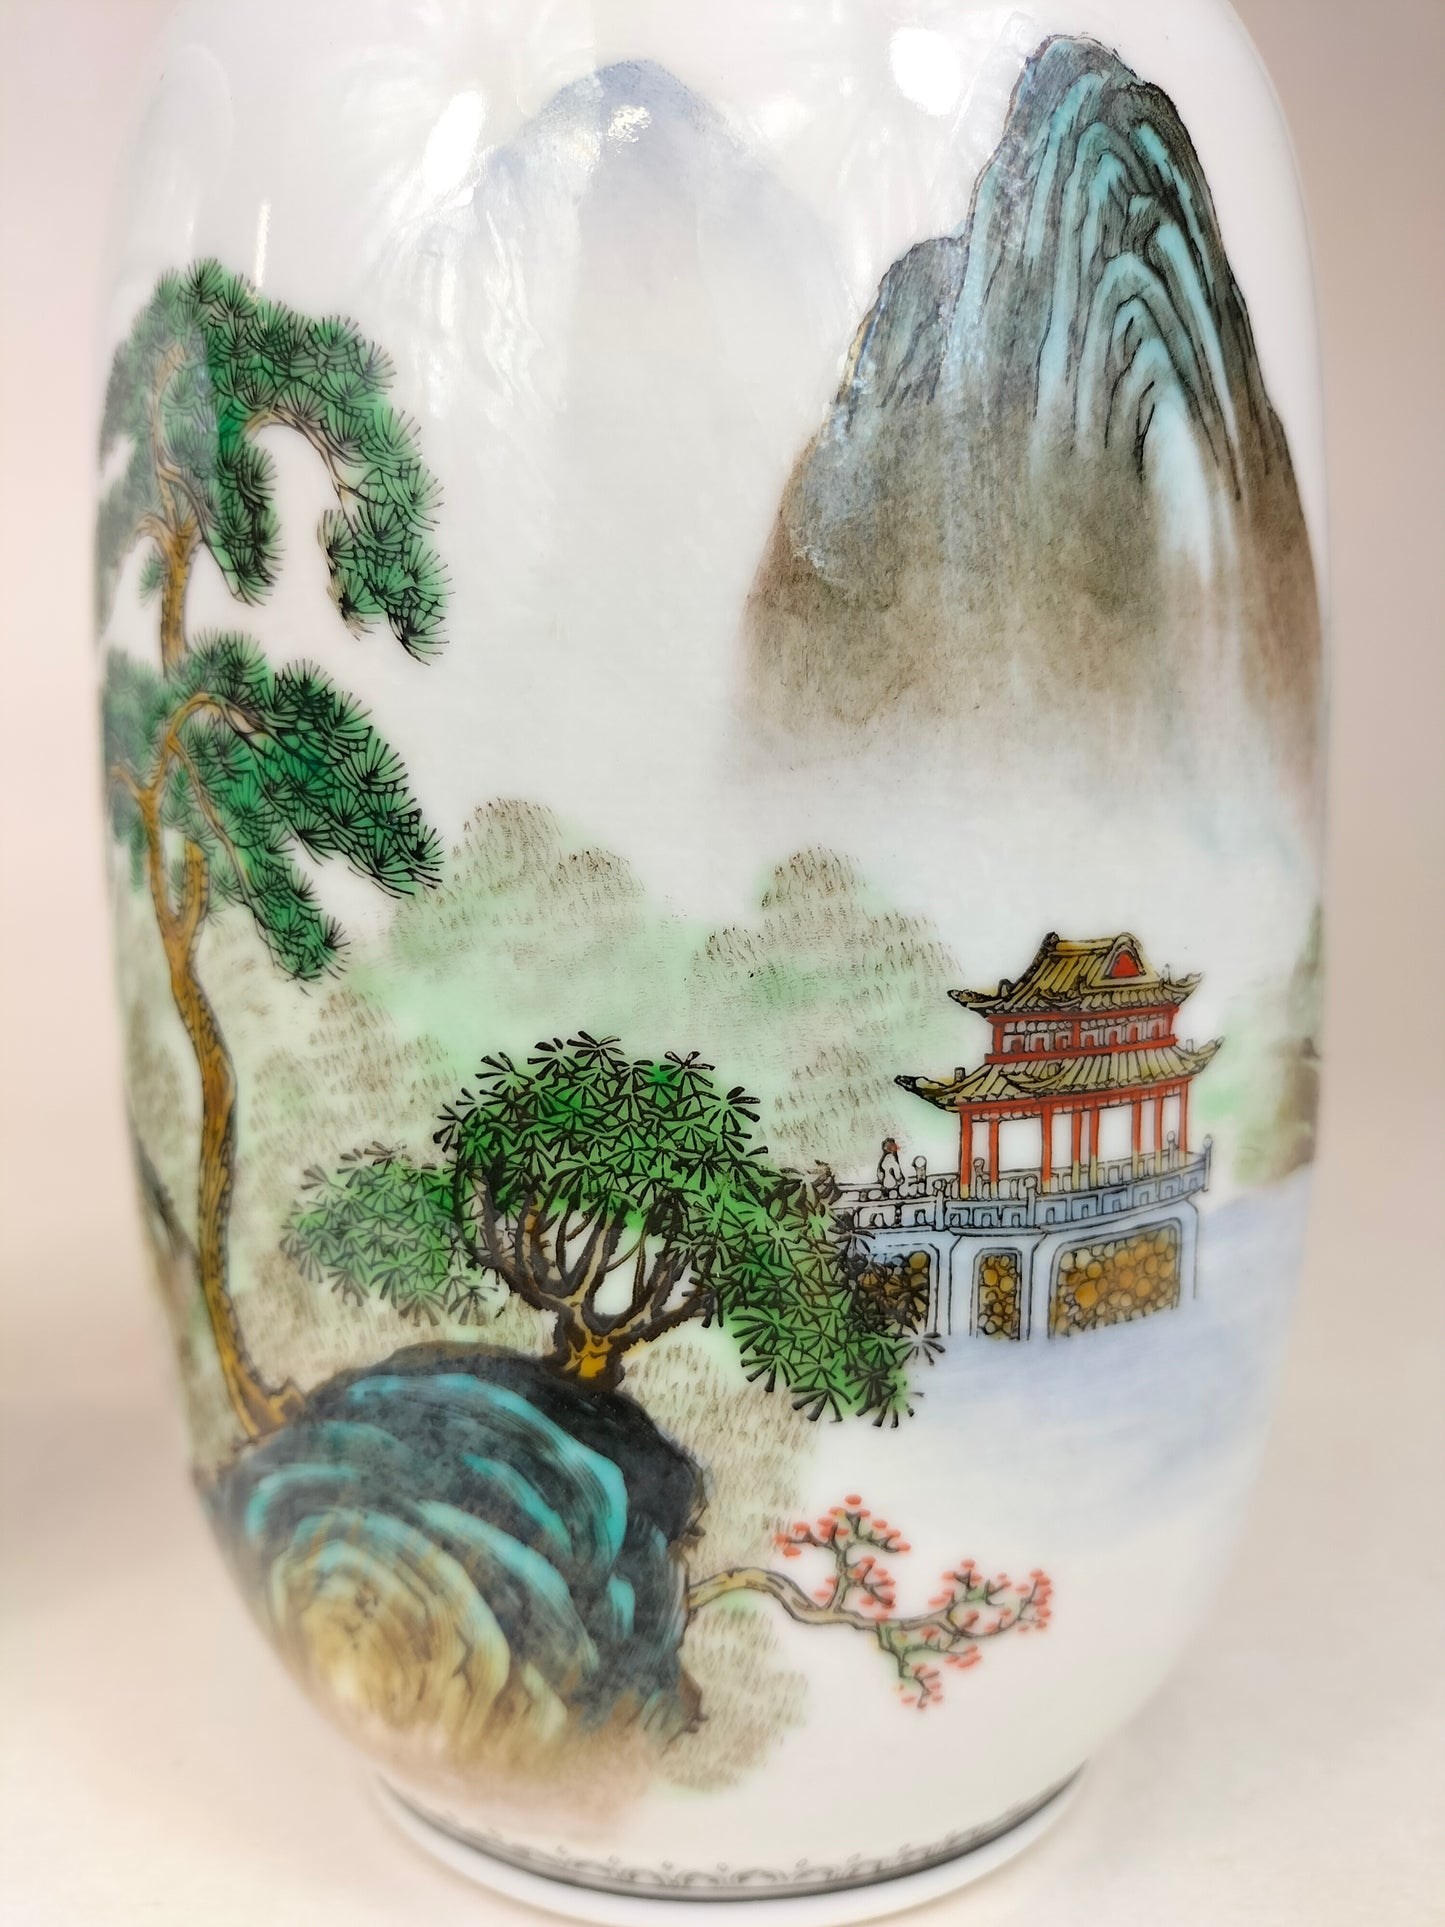 Par de vasos chineses decorados com paisagem // Jingdezhen - século XX